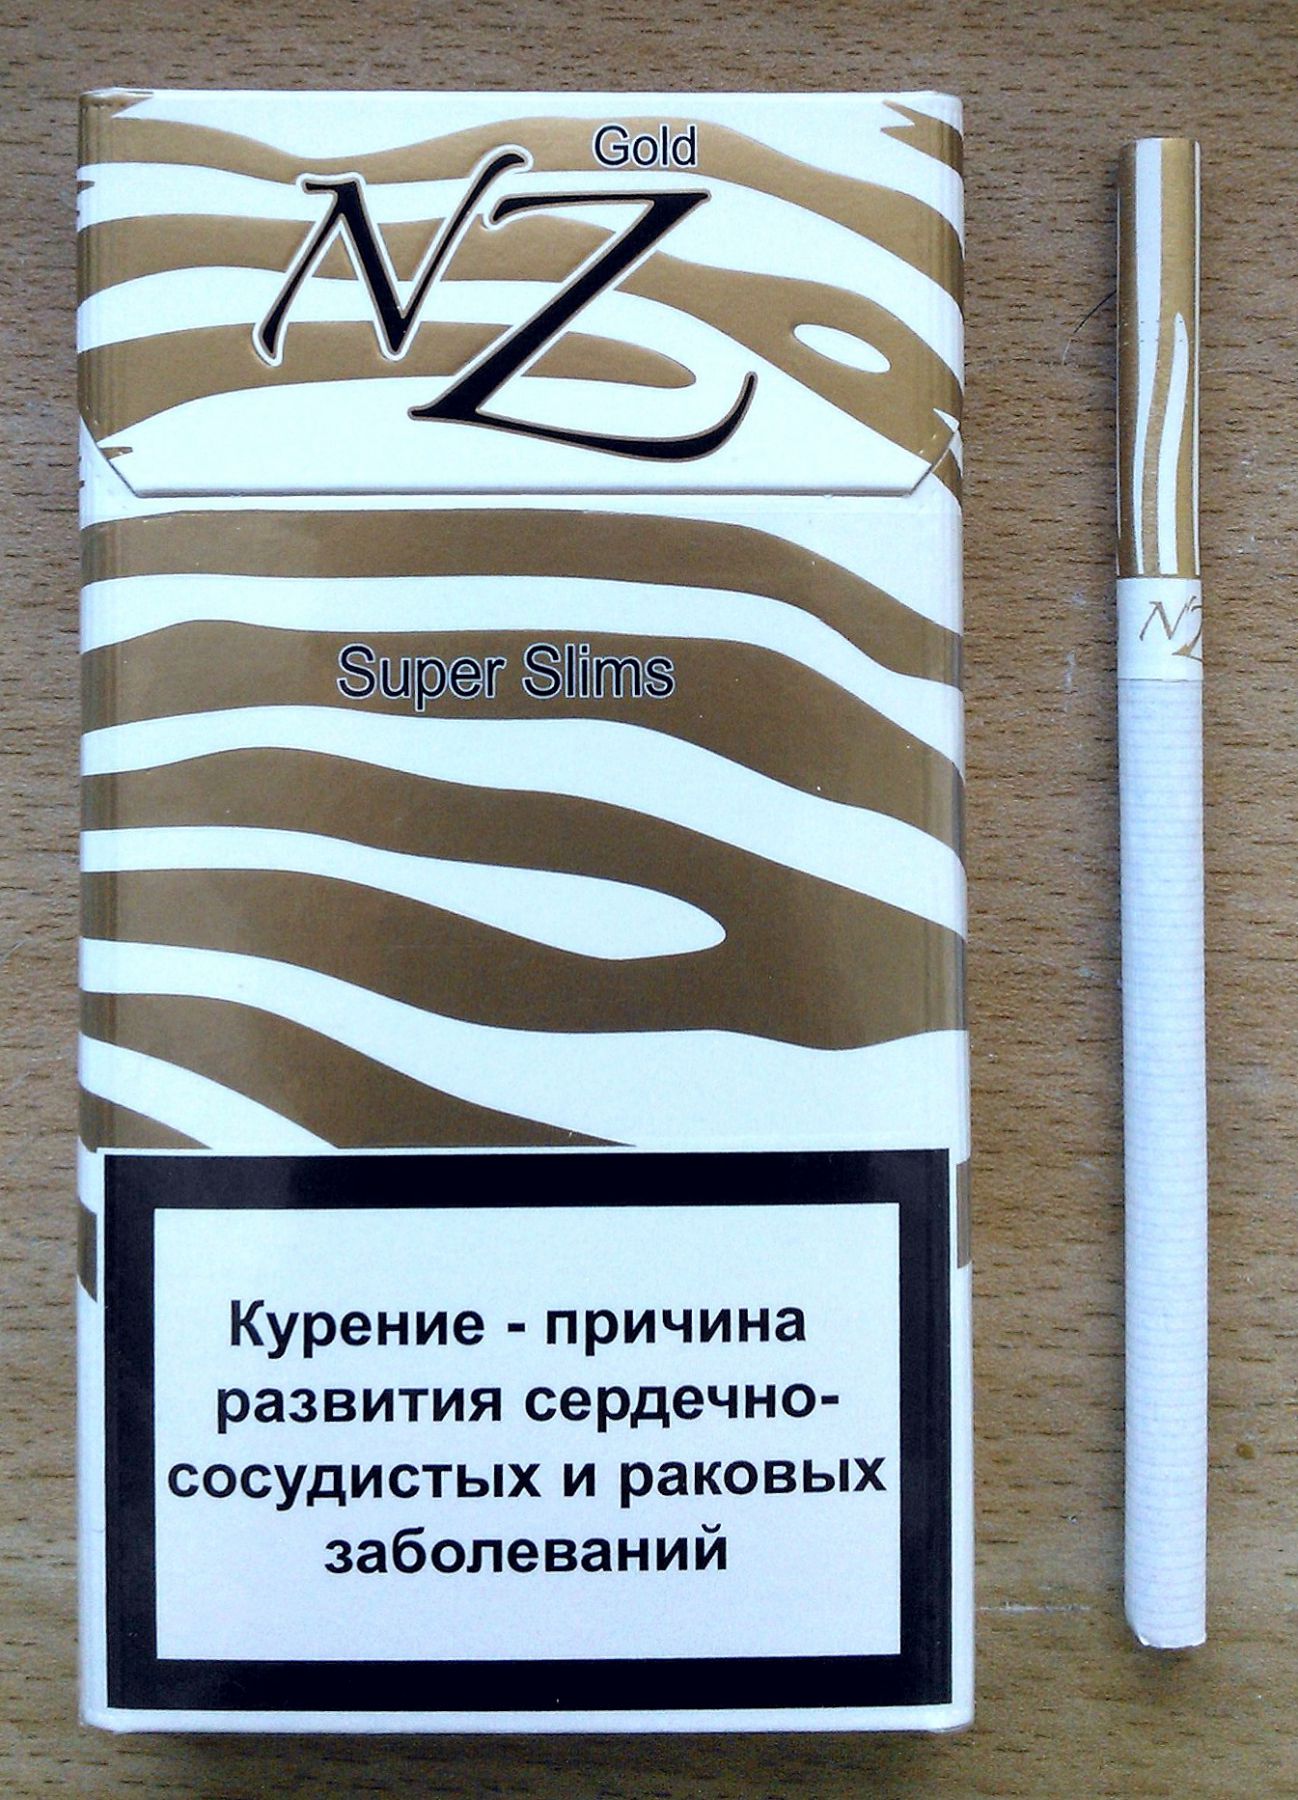 Gold compact. Сигареты Белорусские НЗ 8 НЗ 10. НЗ сафари сигареты компакт. Сигареты nz Gold super Slims. Белорусские сигареты НЗ Голд.